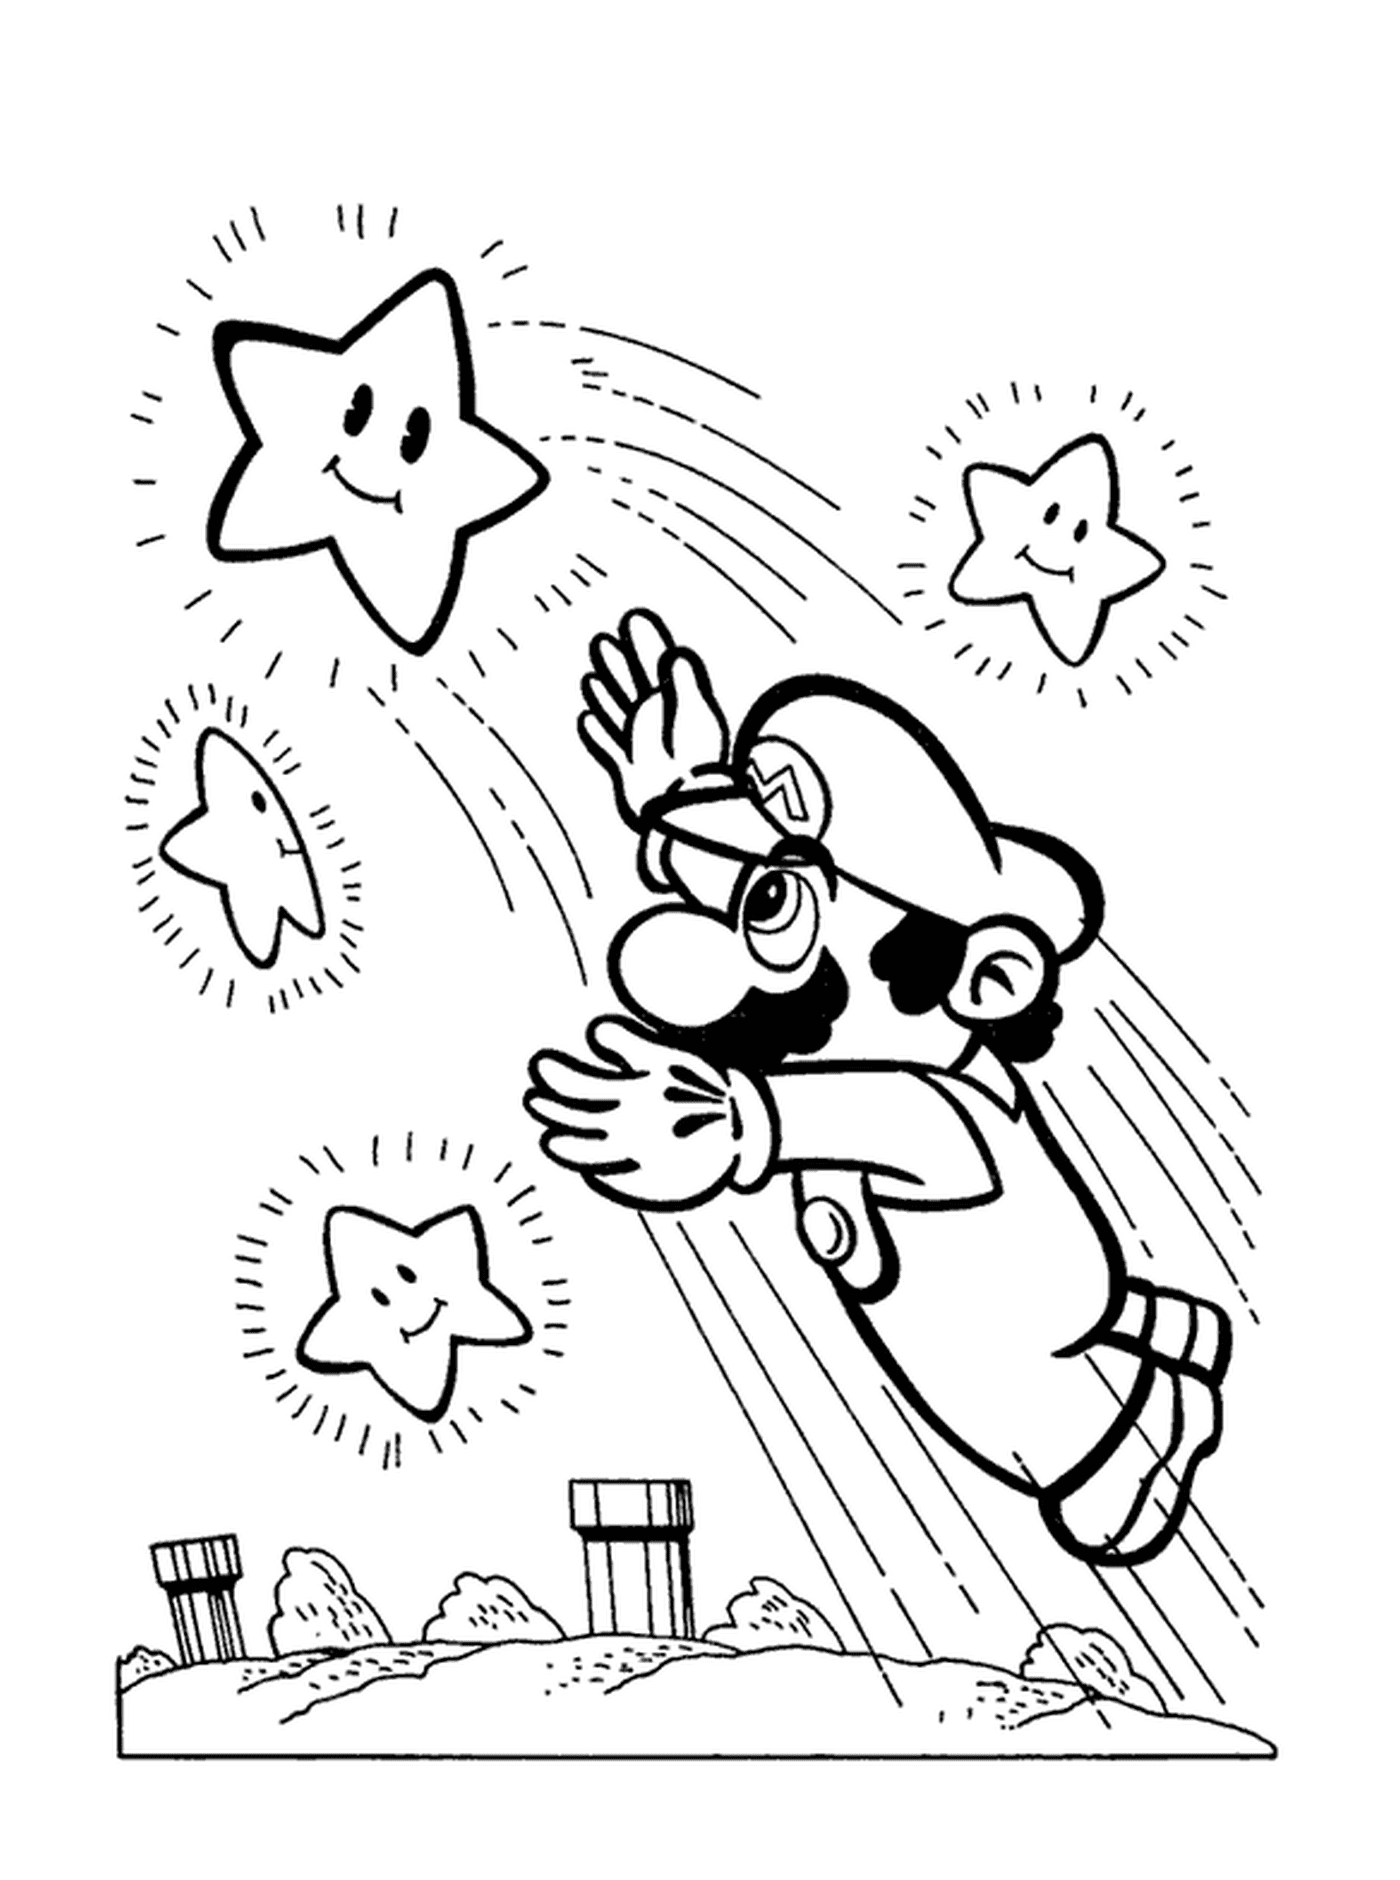   Mario attrape une étoile brillante 